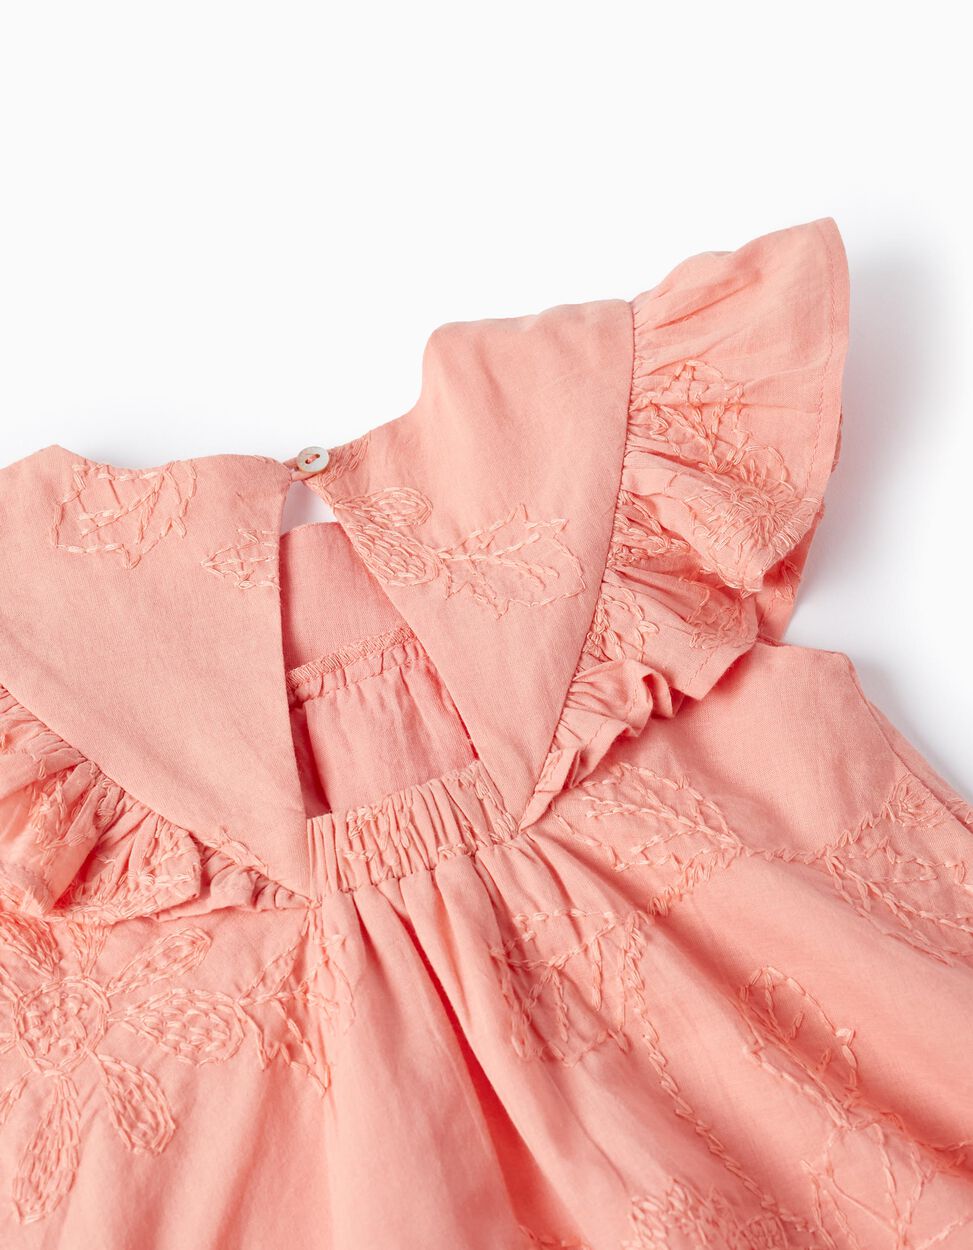 Comprar Online Vestido de Algodón con Bordados y Volantes para Bebé Niña, Coral